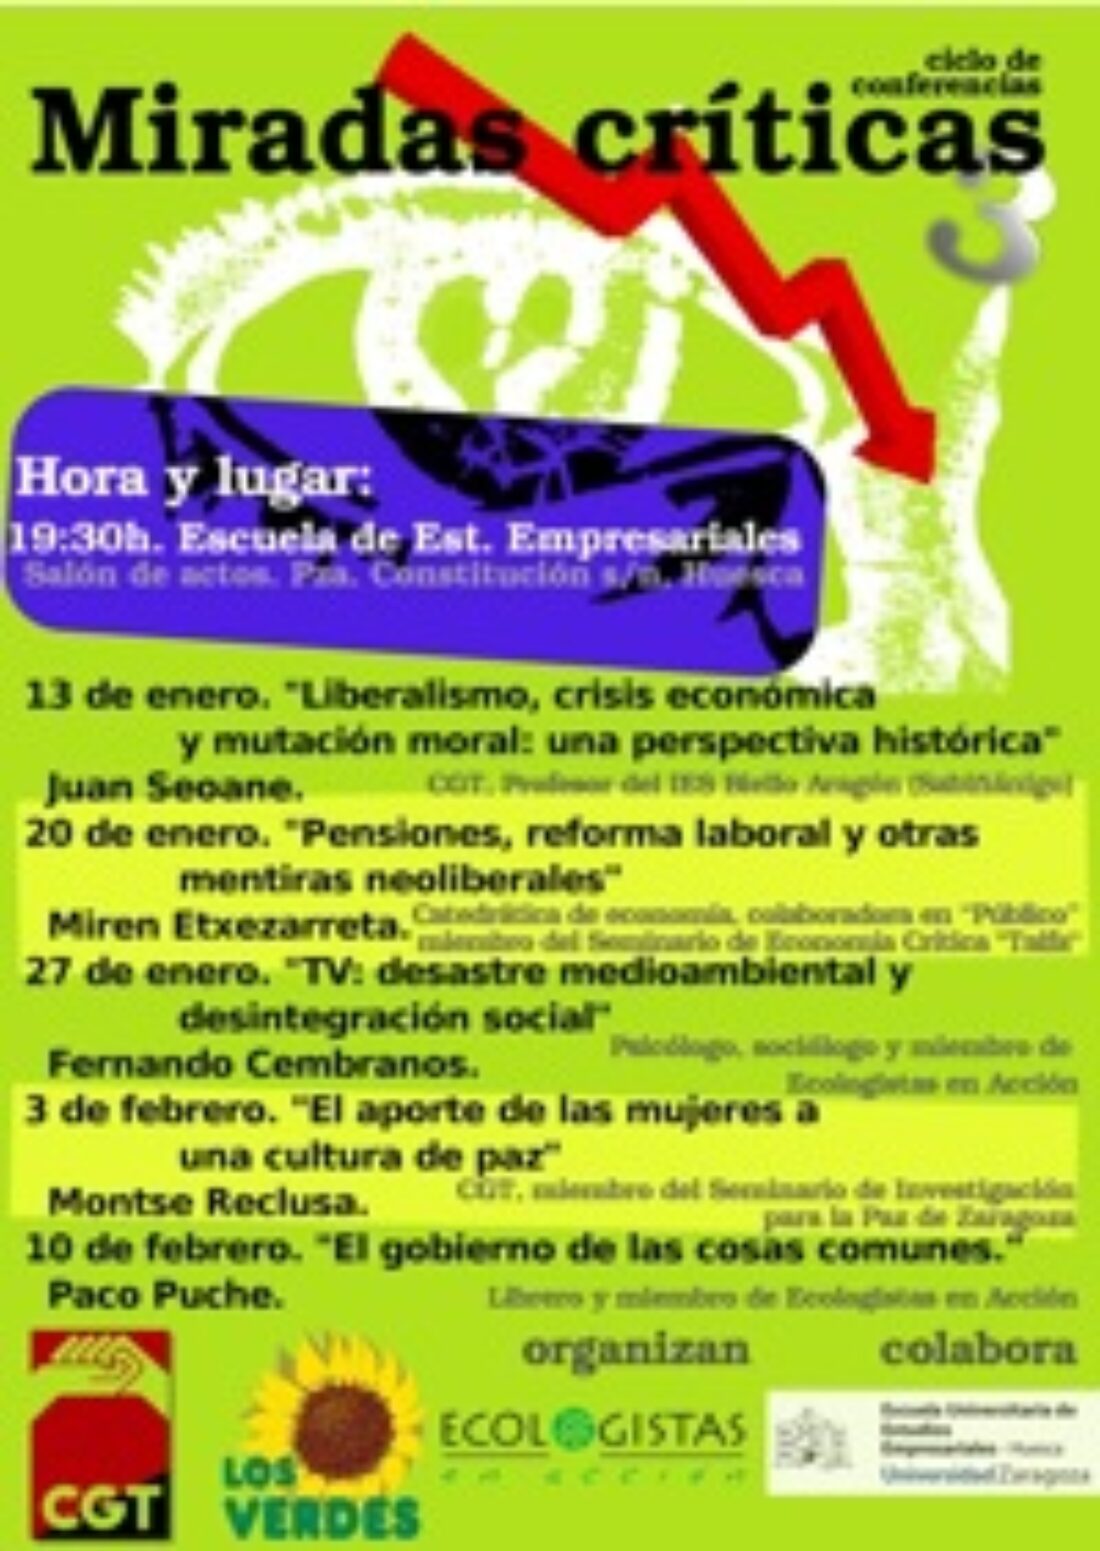 Hasta el 10 de febrero, Huesca : Ciclo «Miradas críticas»